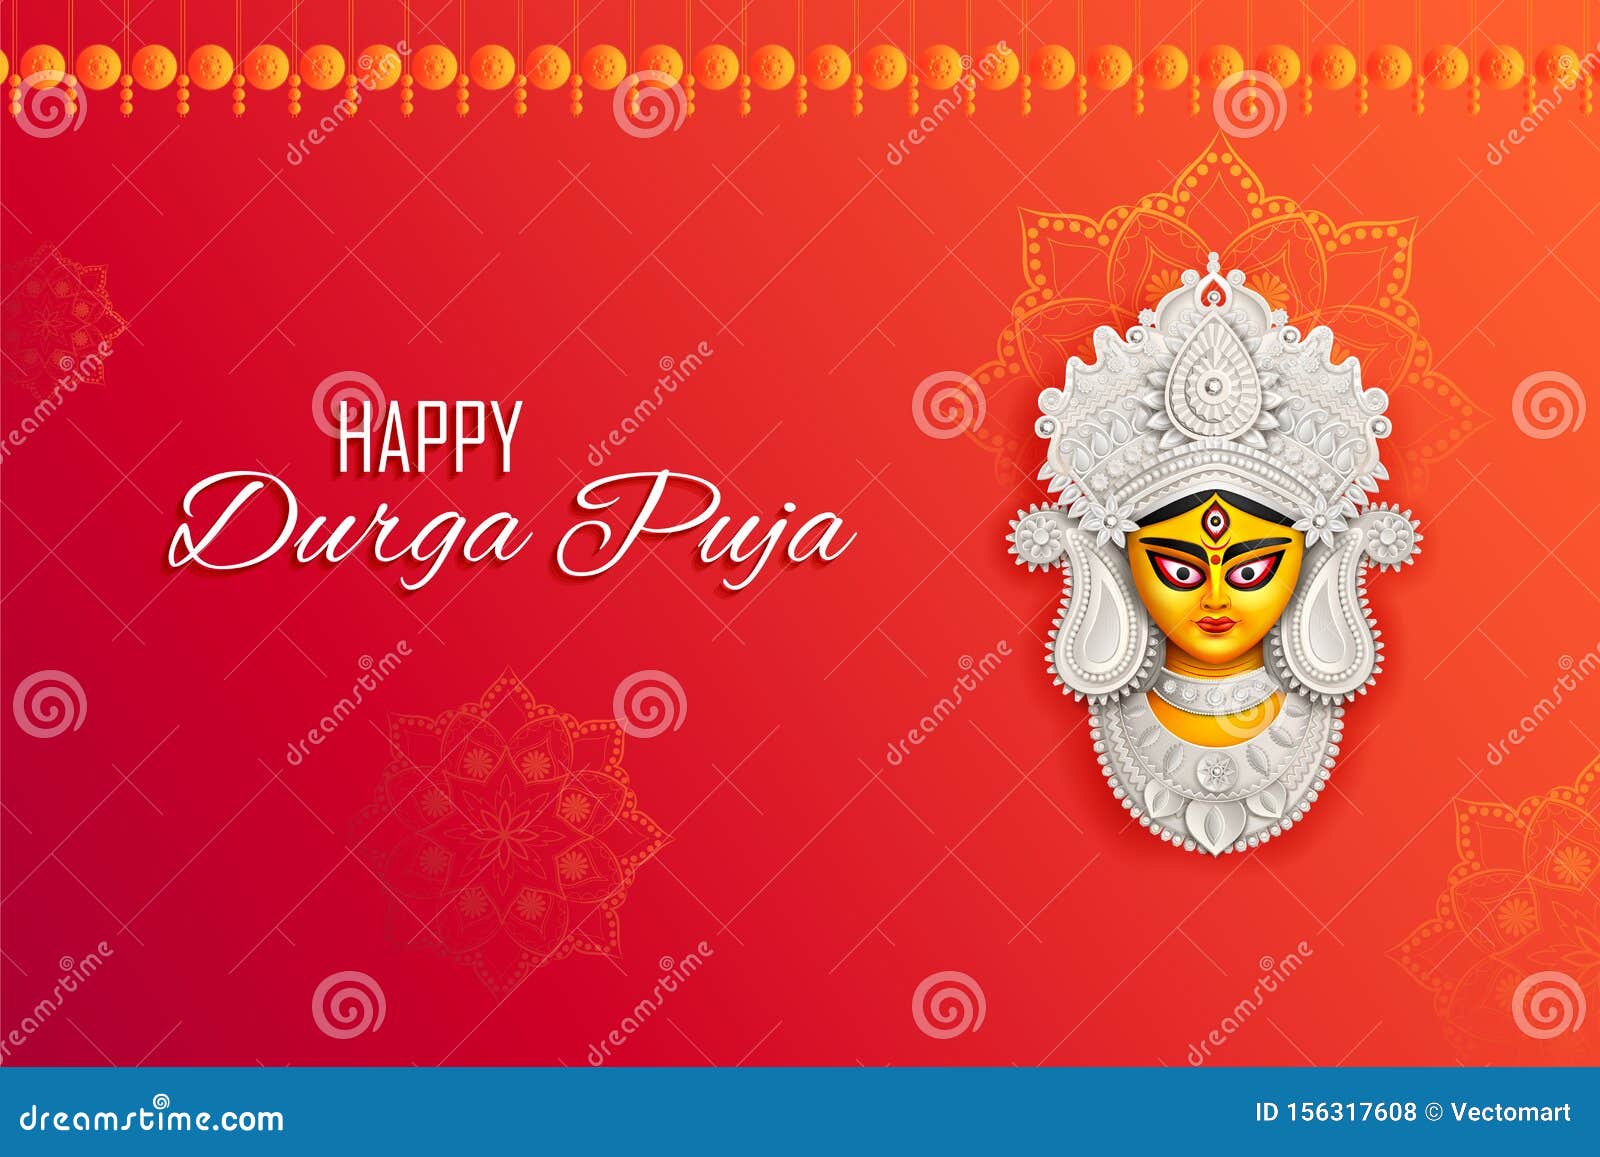 Durga Puja là một trong những lễ hội lớn nhất của người Hindu, đánh dấu cuộc chiến giữa Nữ thần Durga và ác quỷ Mahishasura. Cùng xem hình ảnh liên quan để cảm nhận sự hào hứng và sắc màu của lễ hội này. 